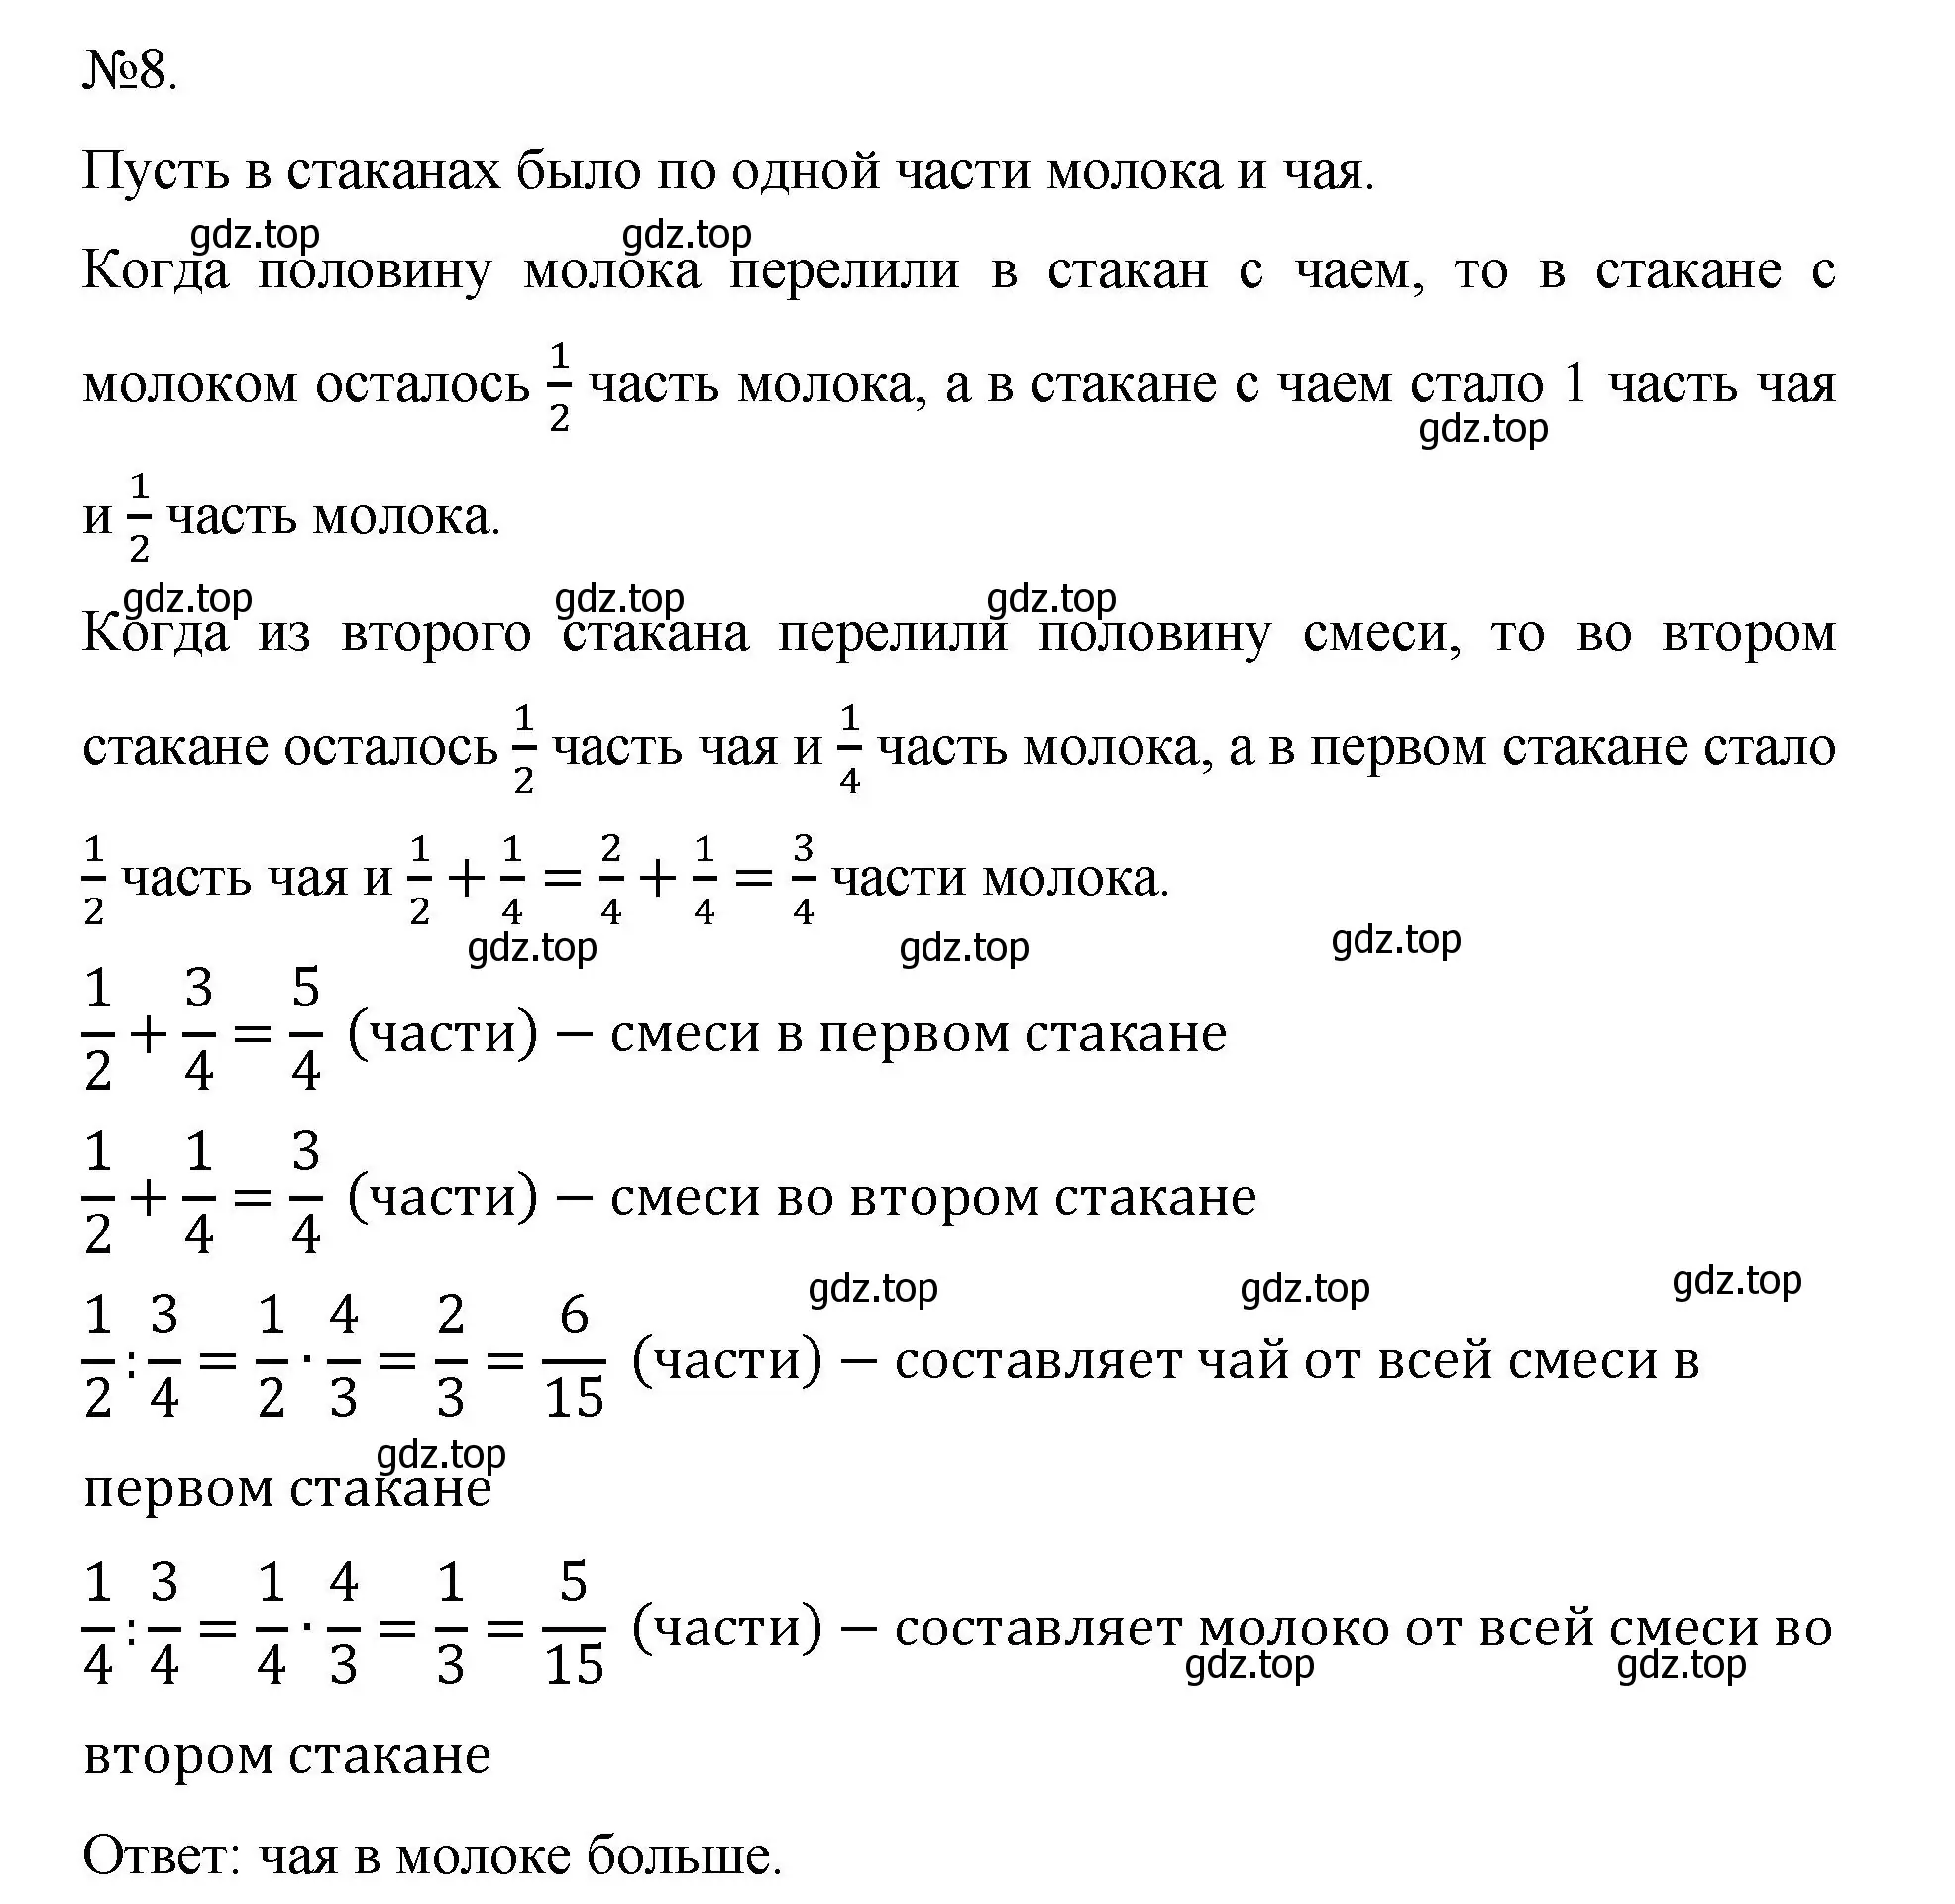 Решение номер 8 (страница 90) гдз по математике 5 класс Виленкин, Жохов, учебник 2 часть